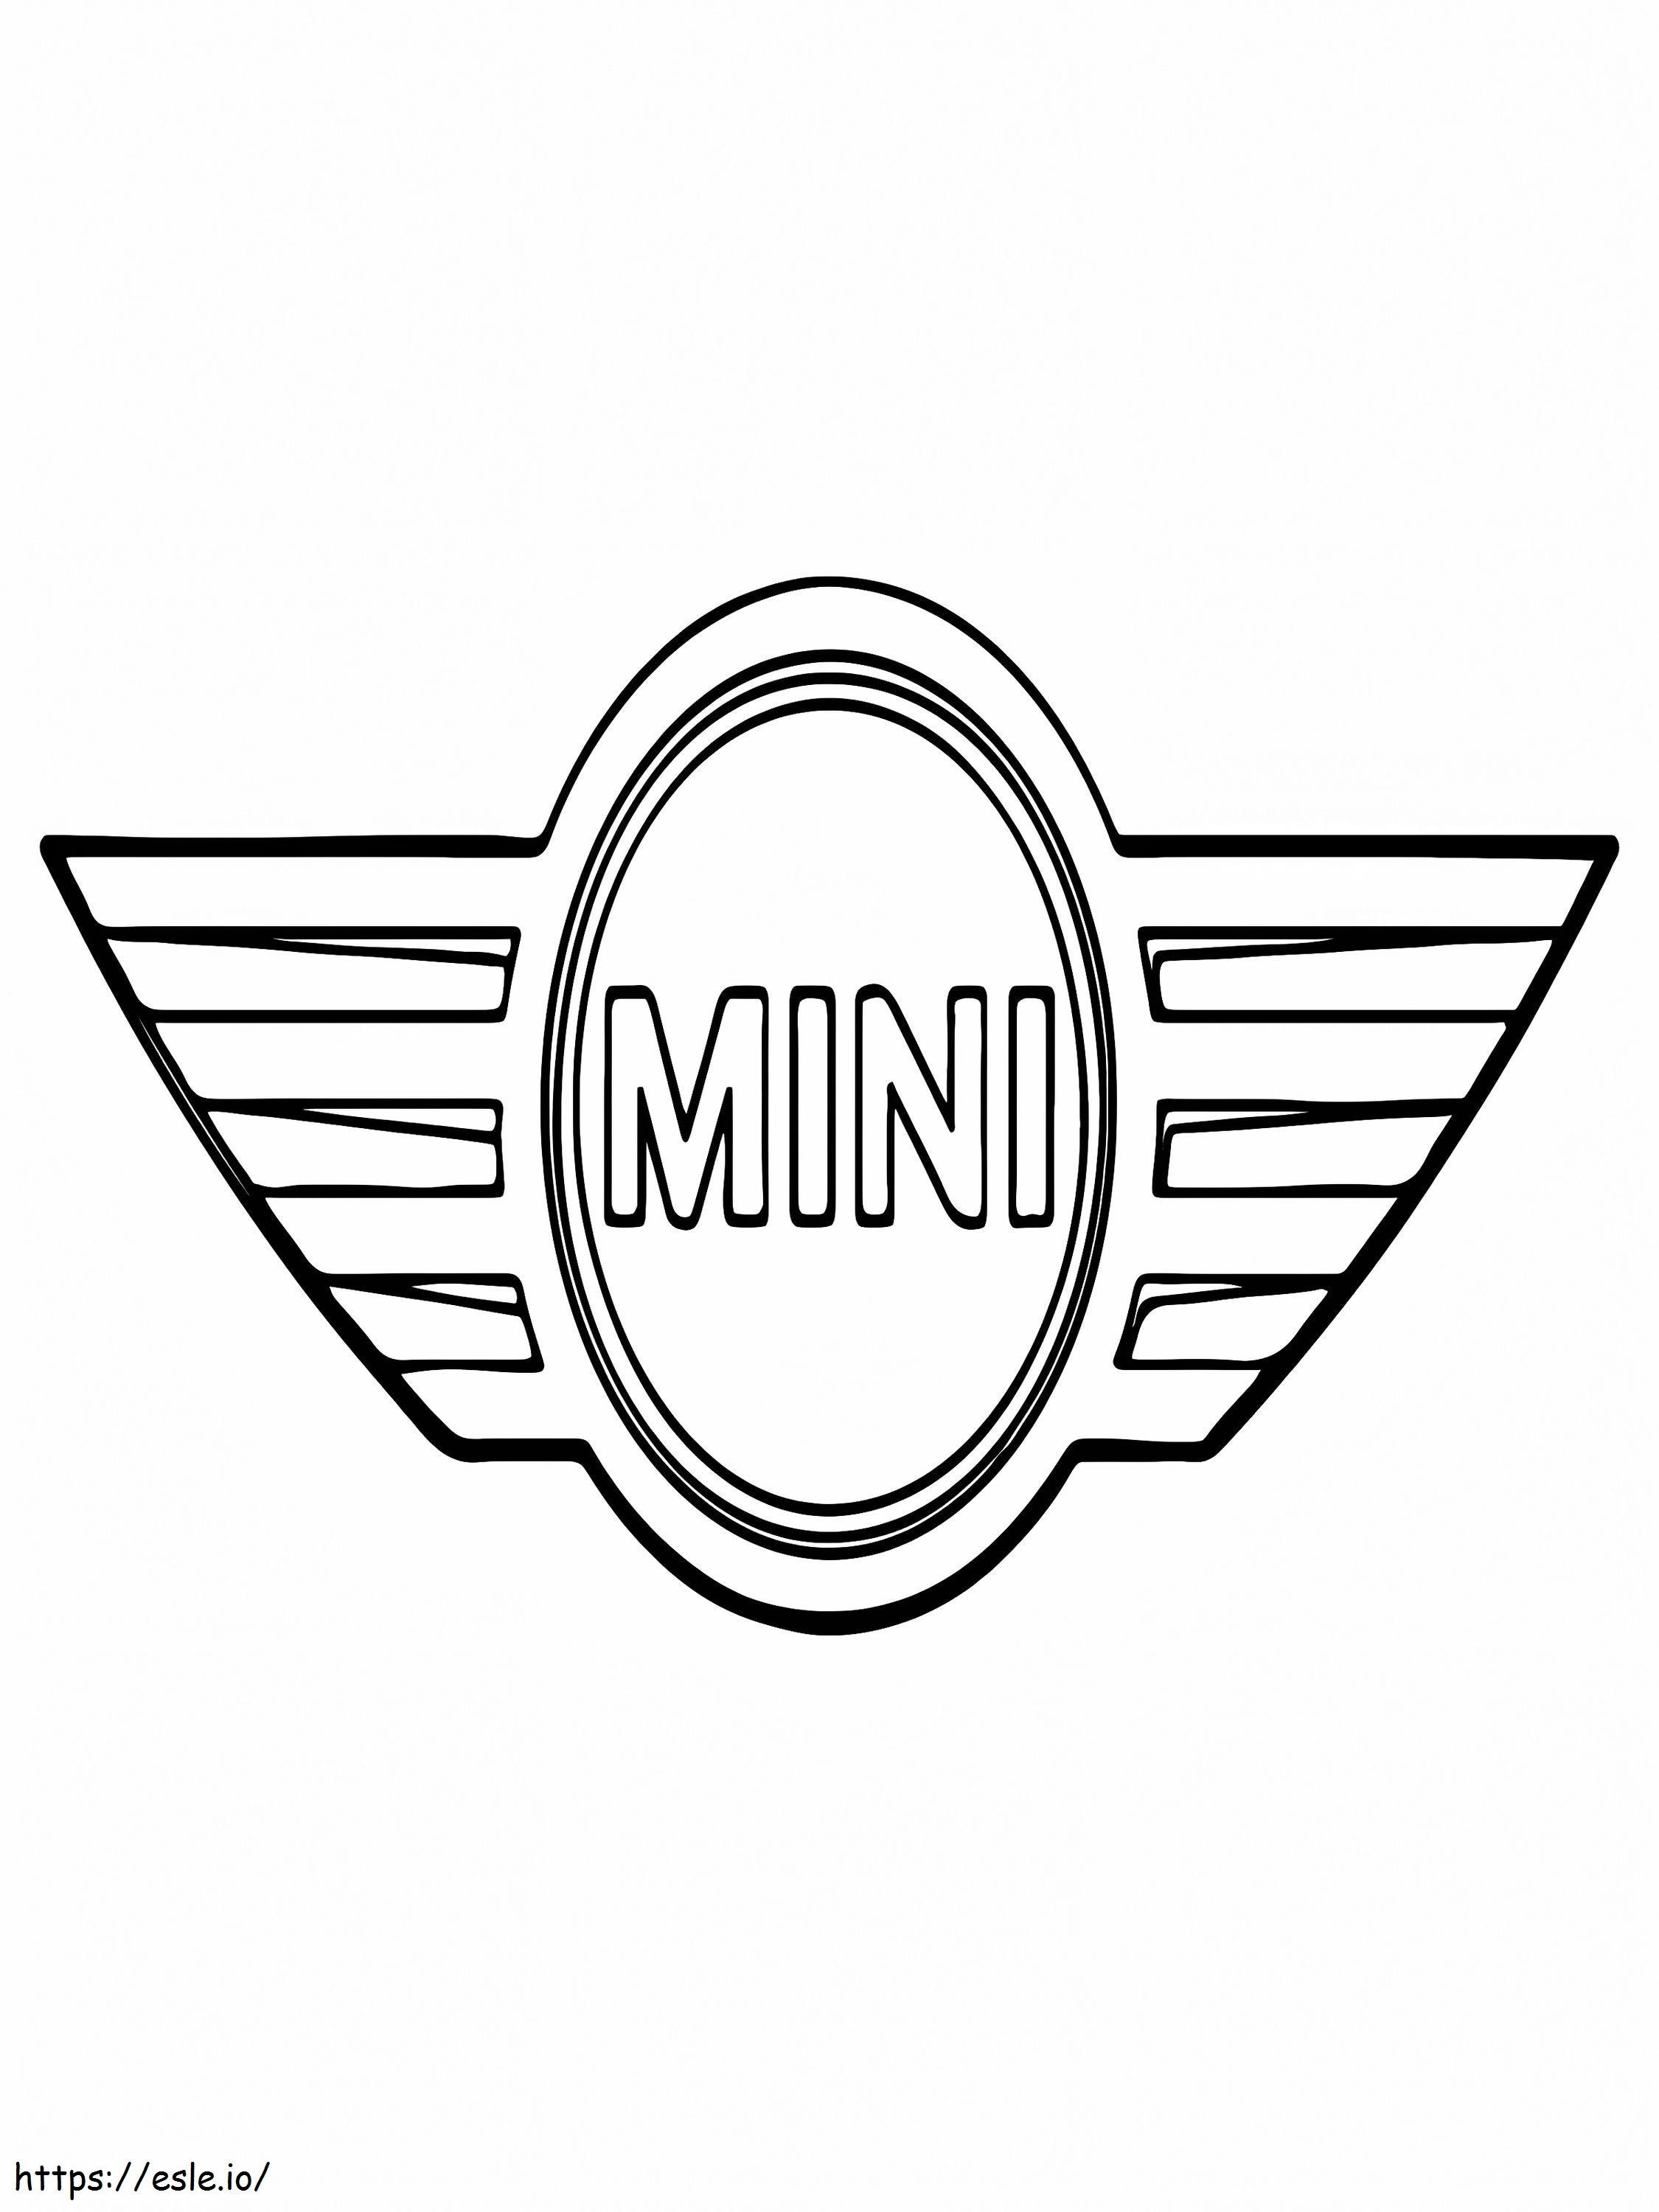 Logo Mini Car de colorat